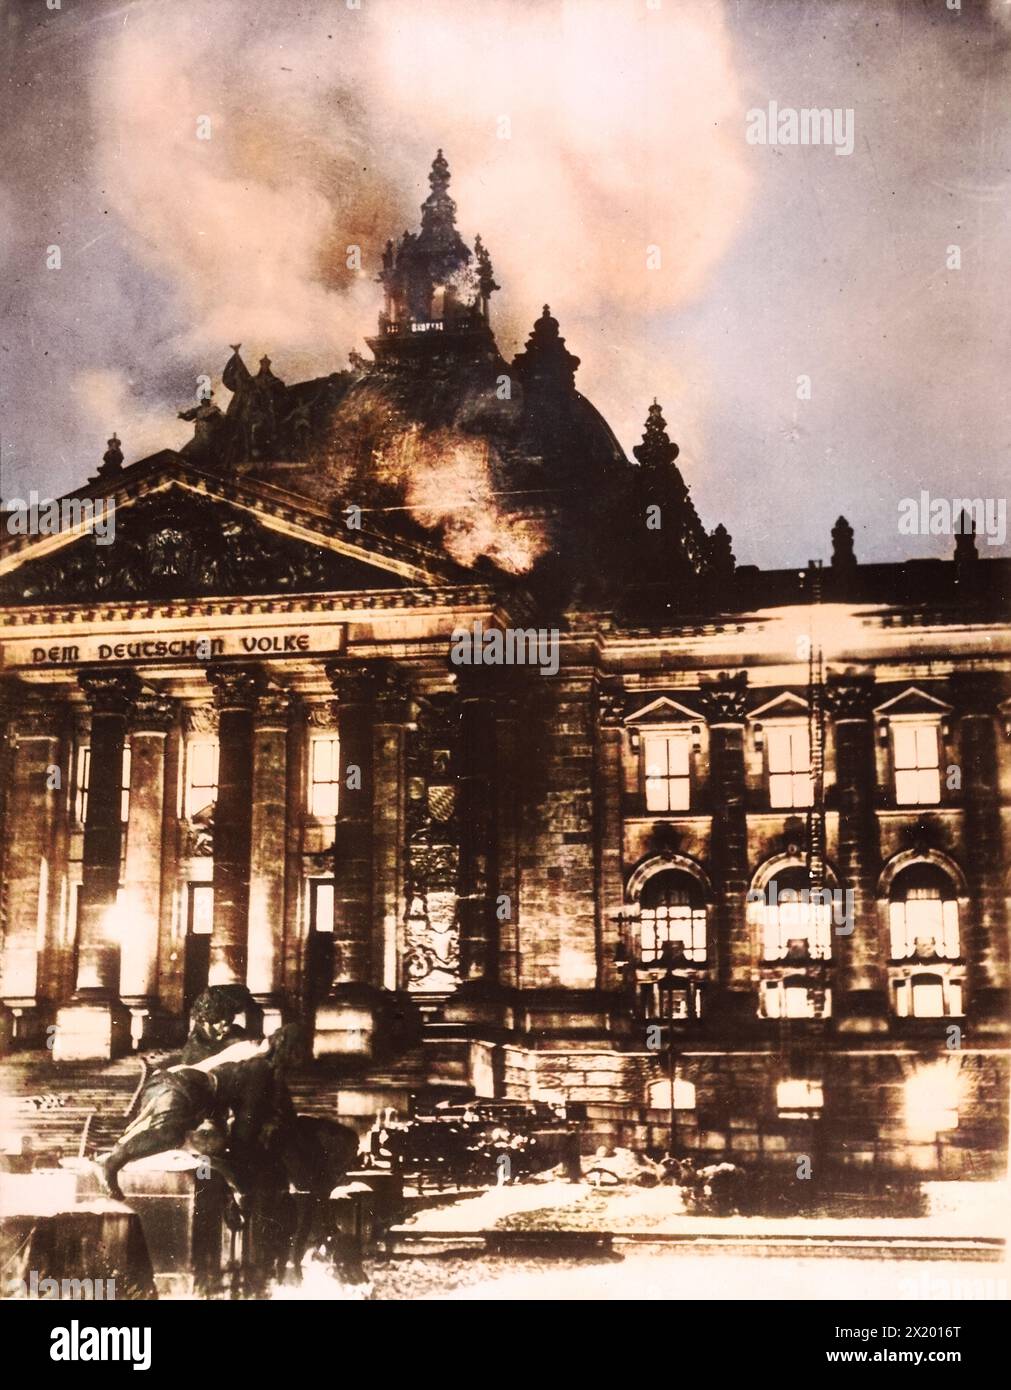 Le bâtiment du Reichstag en feu le 27 février 1933, le bâtiment du Reichstag a été détruit par un incendie organisé par les nationaux-socialistes. Il a servi le gouvernement hitlérien comme prétexte à une campagne de terreur, principalement contre les communistes et autres antifascistes. Dans ce contexte, le communiste bulgare Georgi Dimitroff a été arrêté et jugé comme innocent dans le procès de l'incendie du Reichstag. Banque D'Images